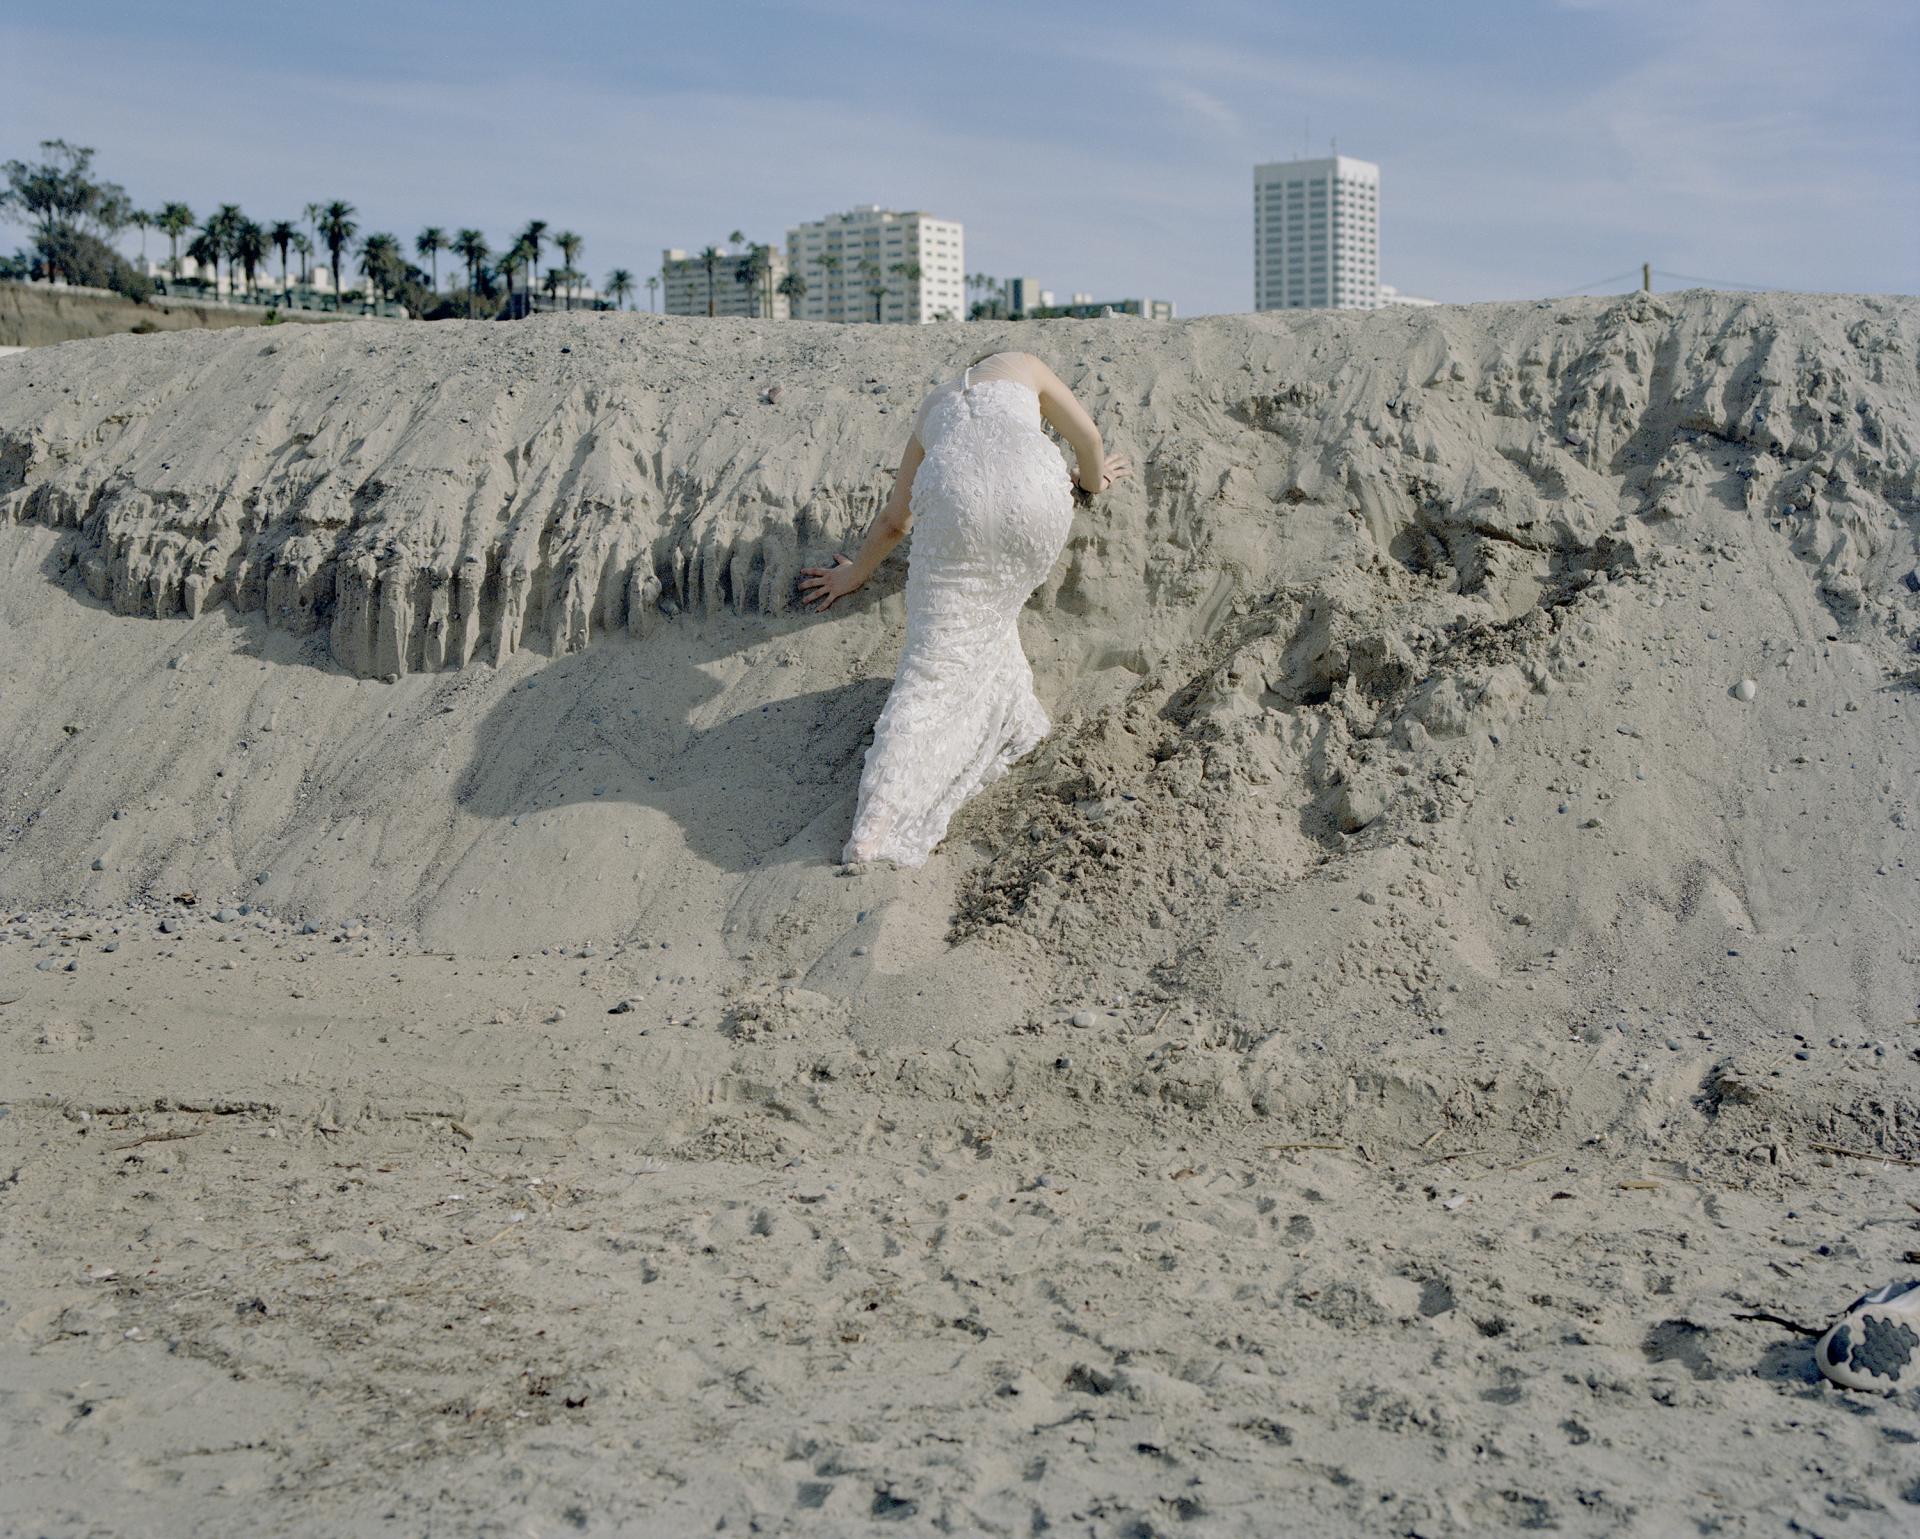 A woman climbing sand dunes in her wedding dress